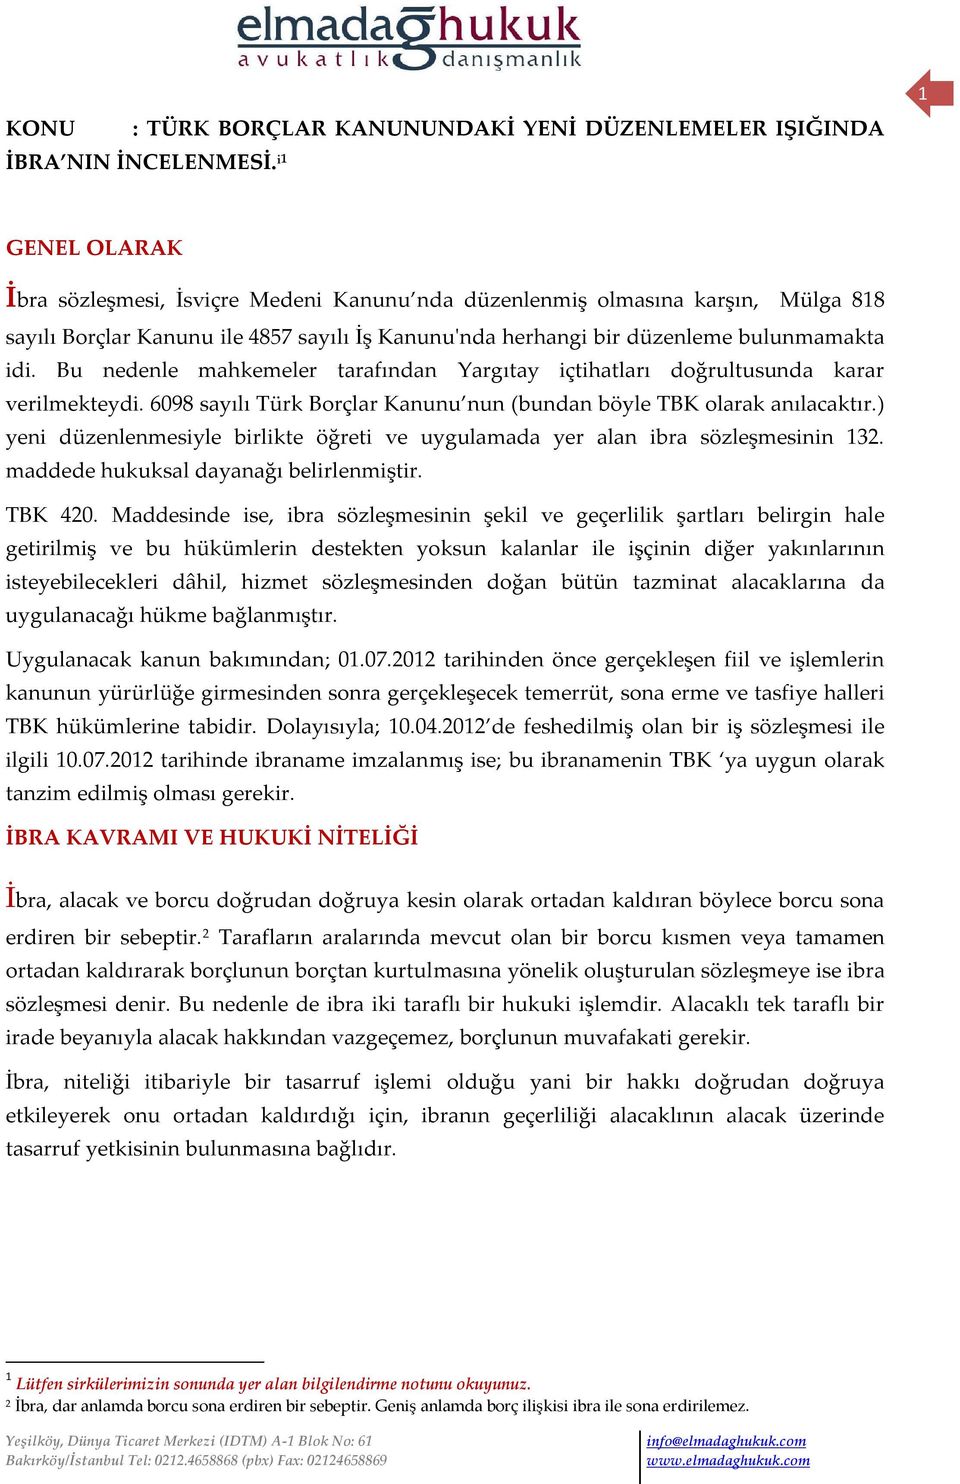 Bu nedenle mahkemeler tarafından Yargıtay içtihatları doğrultusunda karar verilmekteydi. 6098 sayılı Türk Borçlar Kanunu nun (bundan böyle TBK olarak anılacaktır.